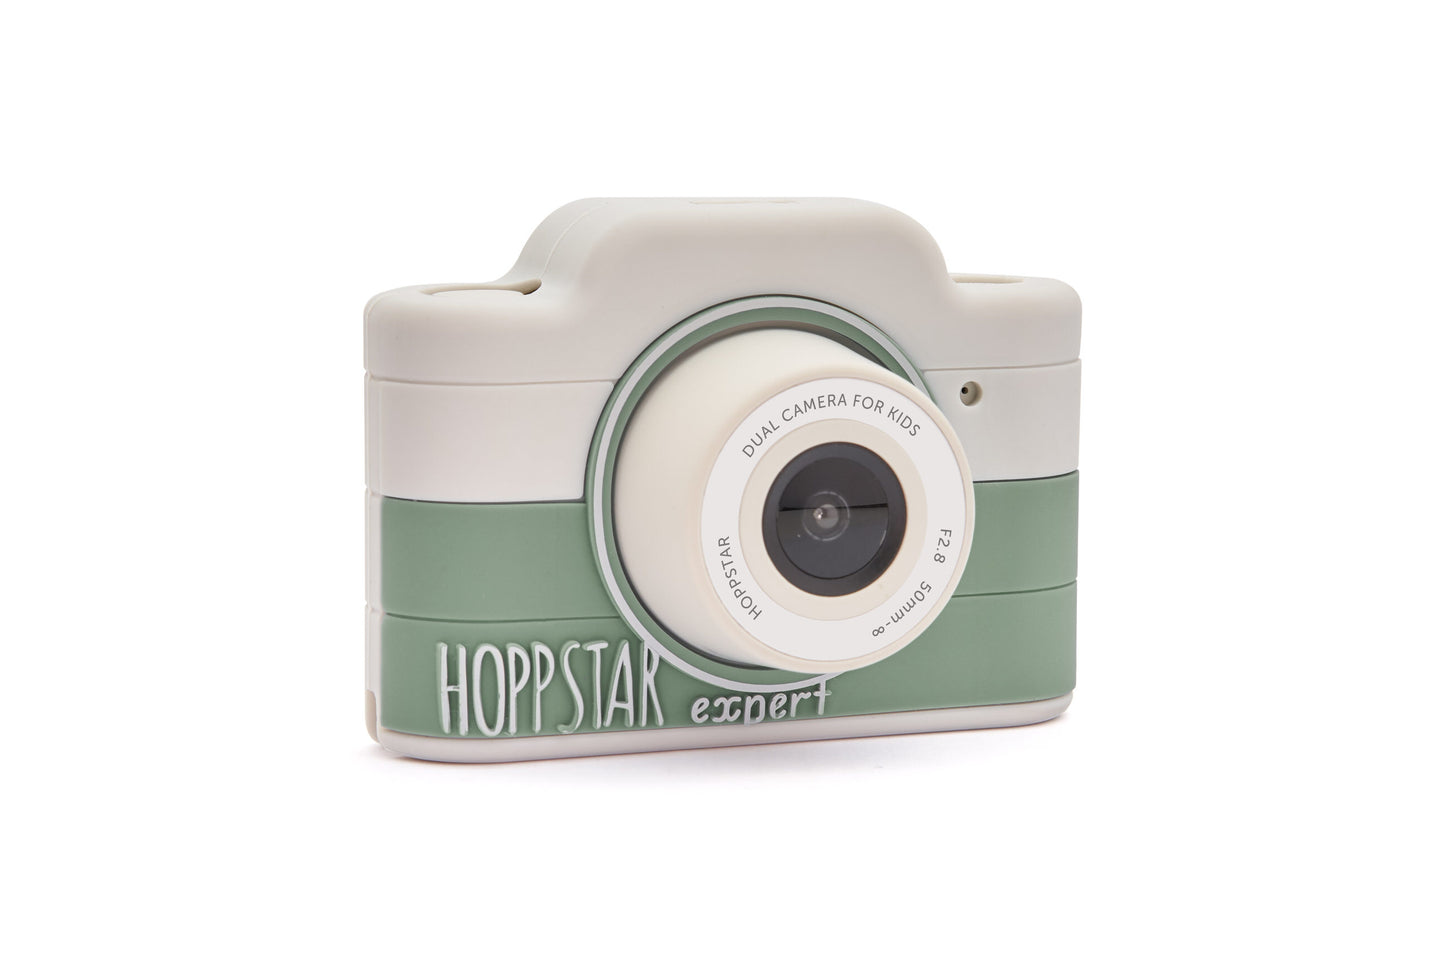 Fotocamera Hoppstar Expert verde